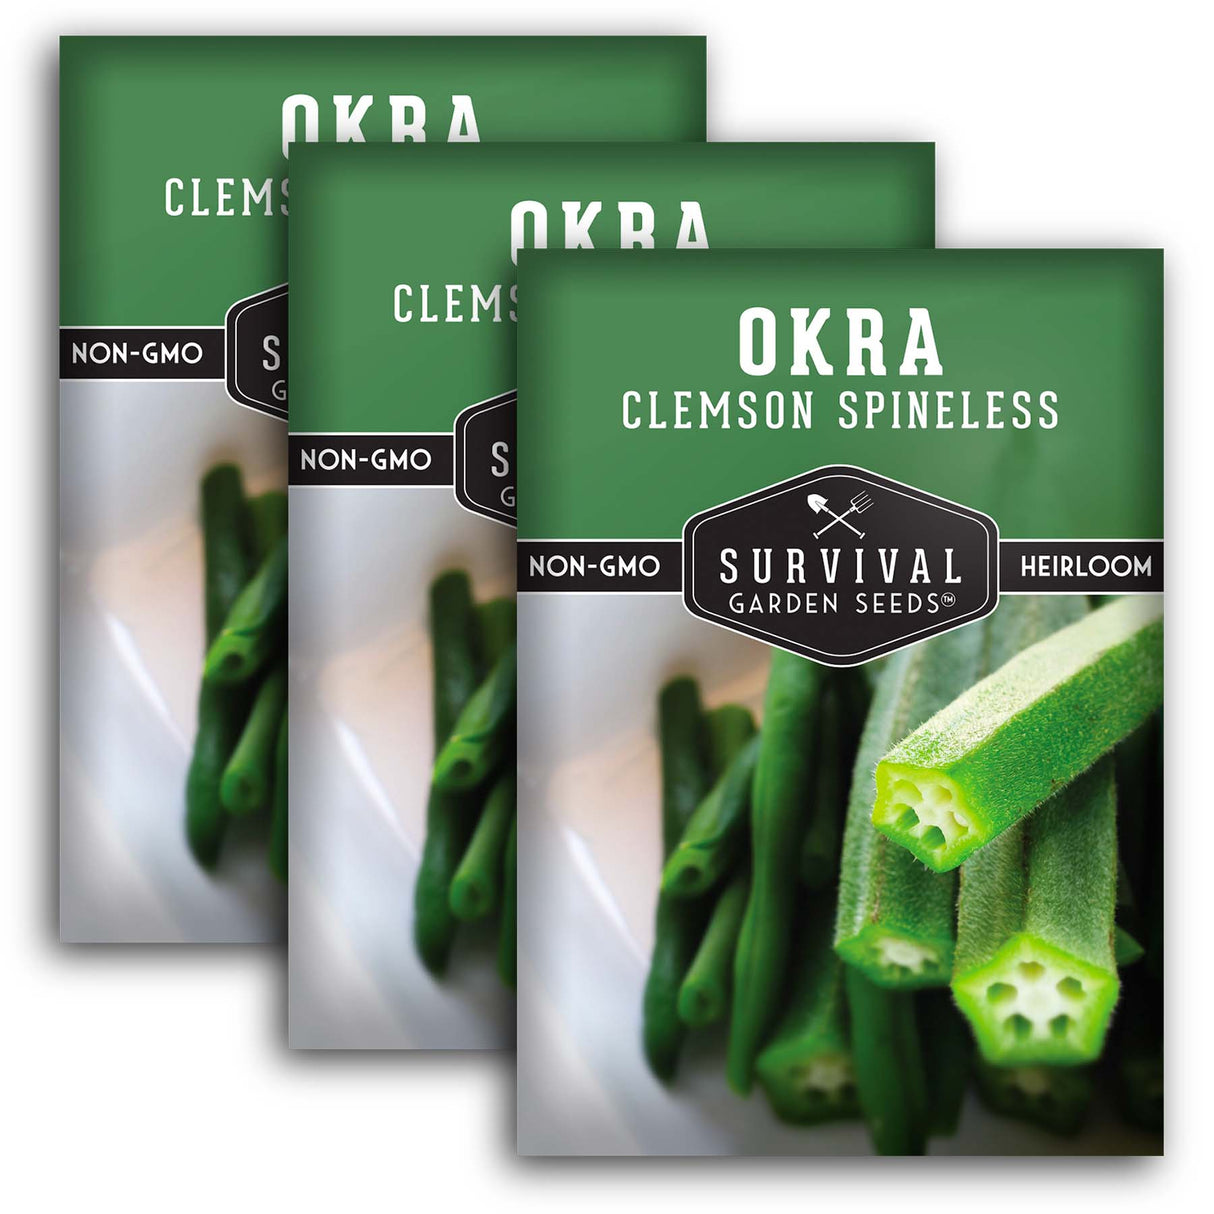 Clemson Spineless Okra Seeds